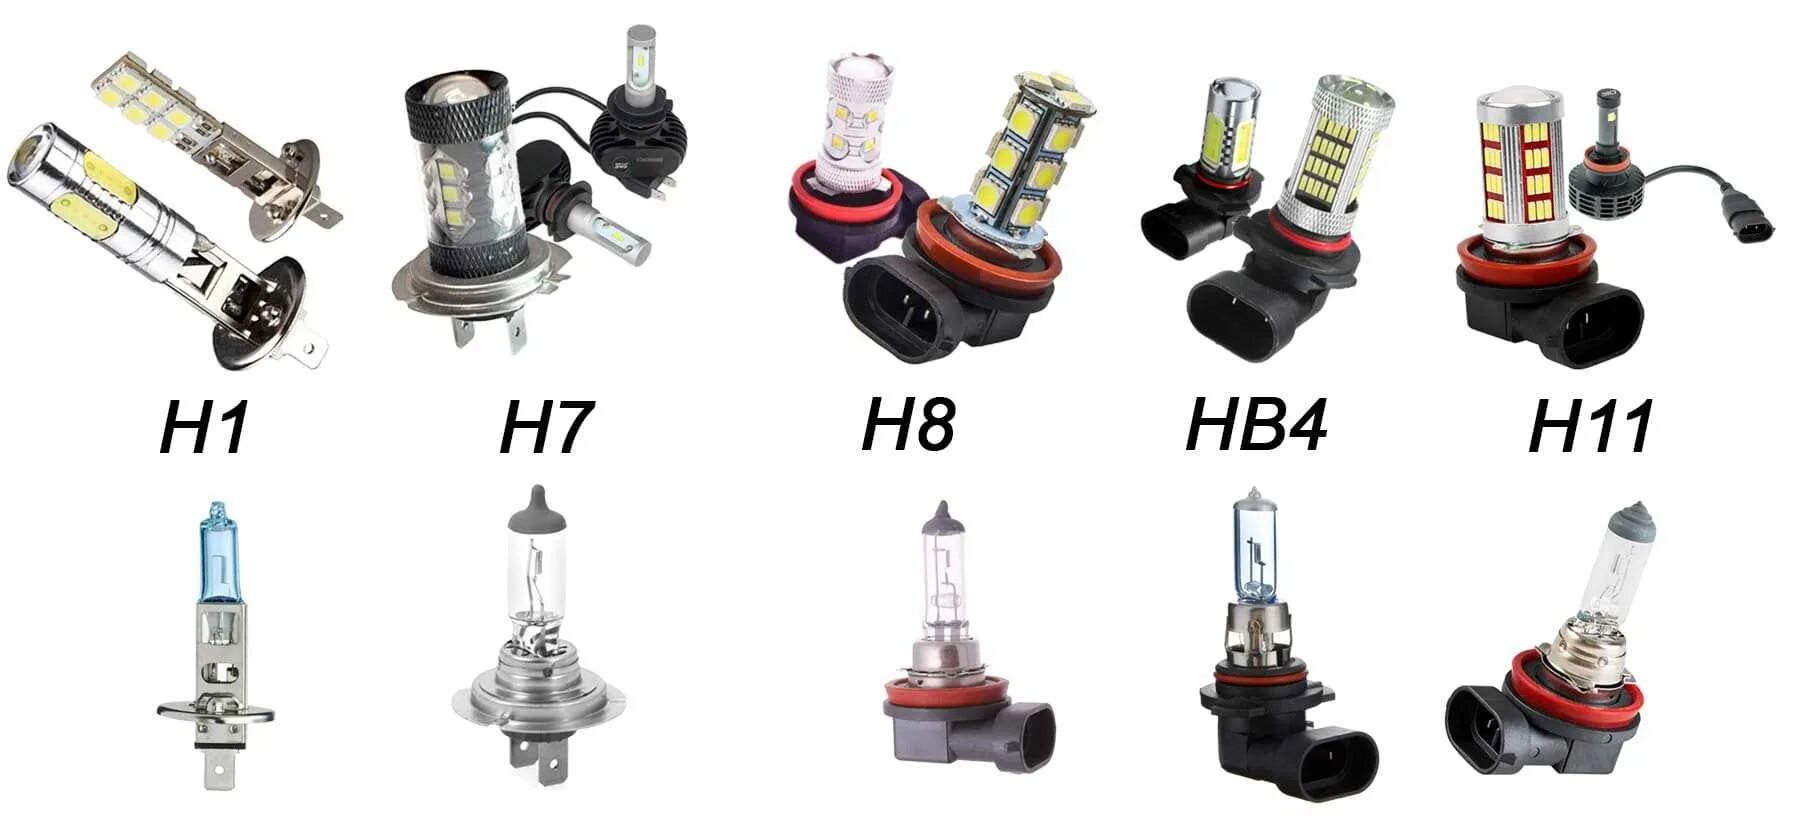 Ближний свет hb4. Светодиодная лампа hb4 Ближний свет. Цоколь h4 и hb4 led. Цоколь ламп hb3 и hb4 разница. Hb4 светодиодная лампа Ближний свет MTF.